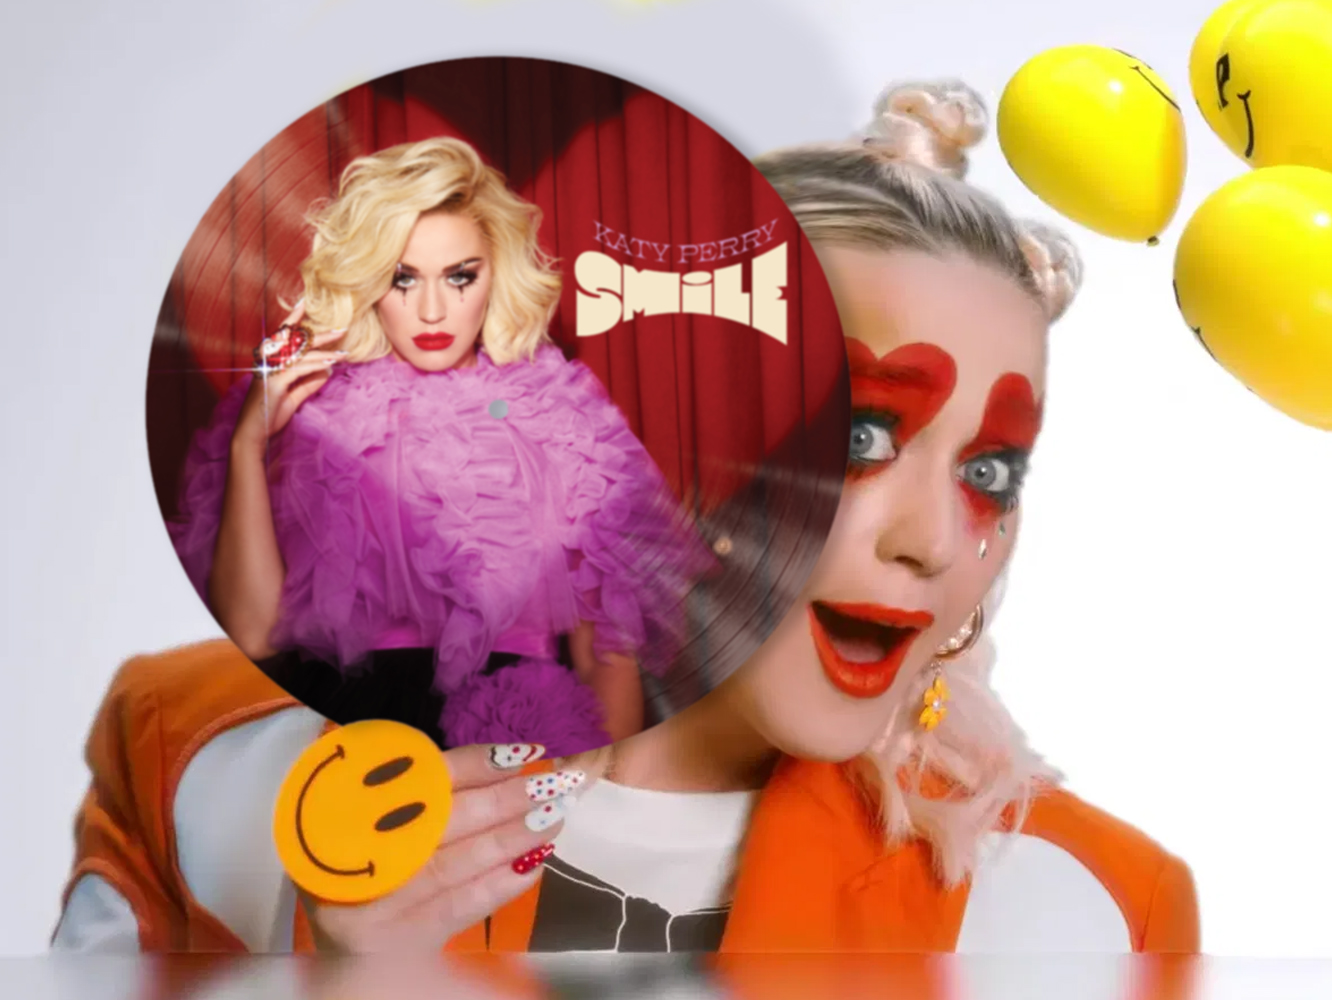  Katy Perry cancela los envíos de ‘Smile’ con sus portadas alternativas, base en su primera semana de ventas